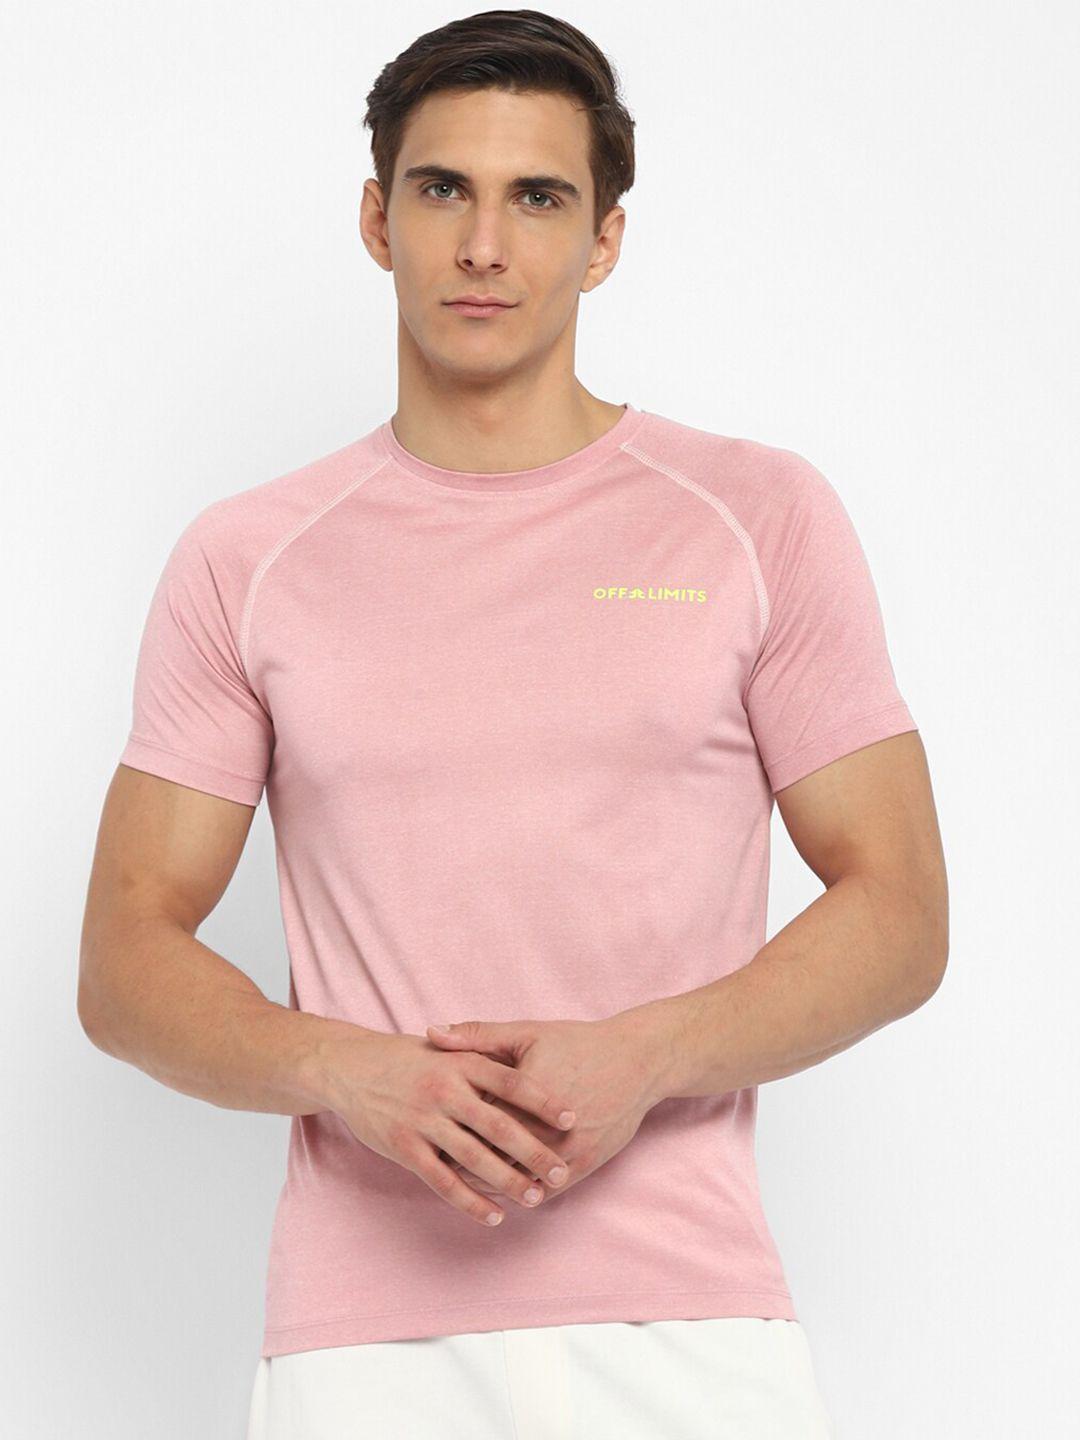 off limits men pink t-shirt